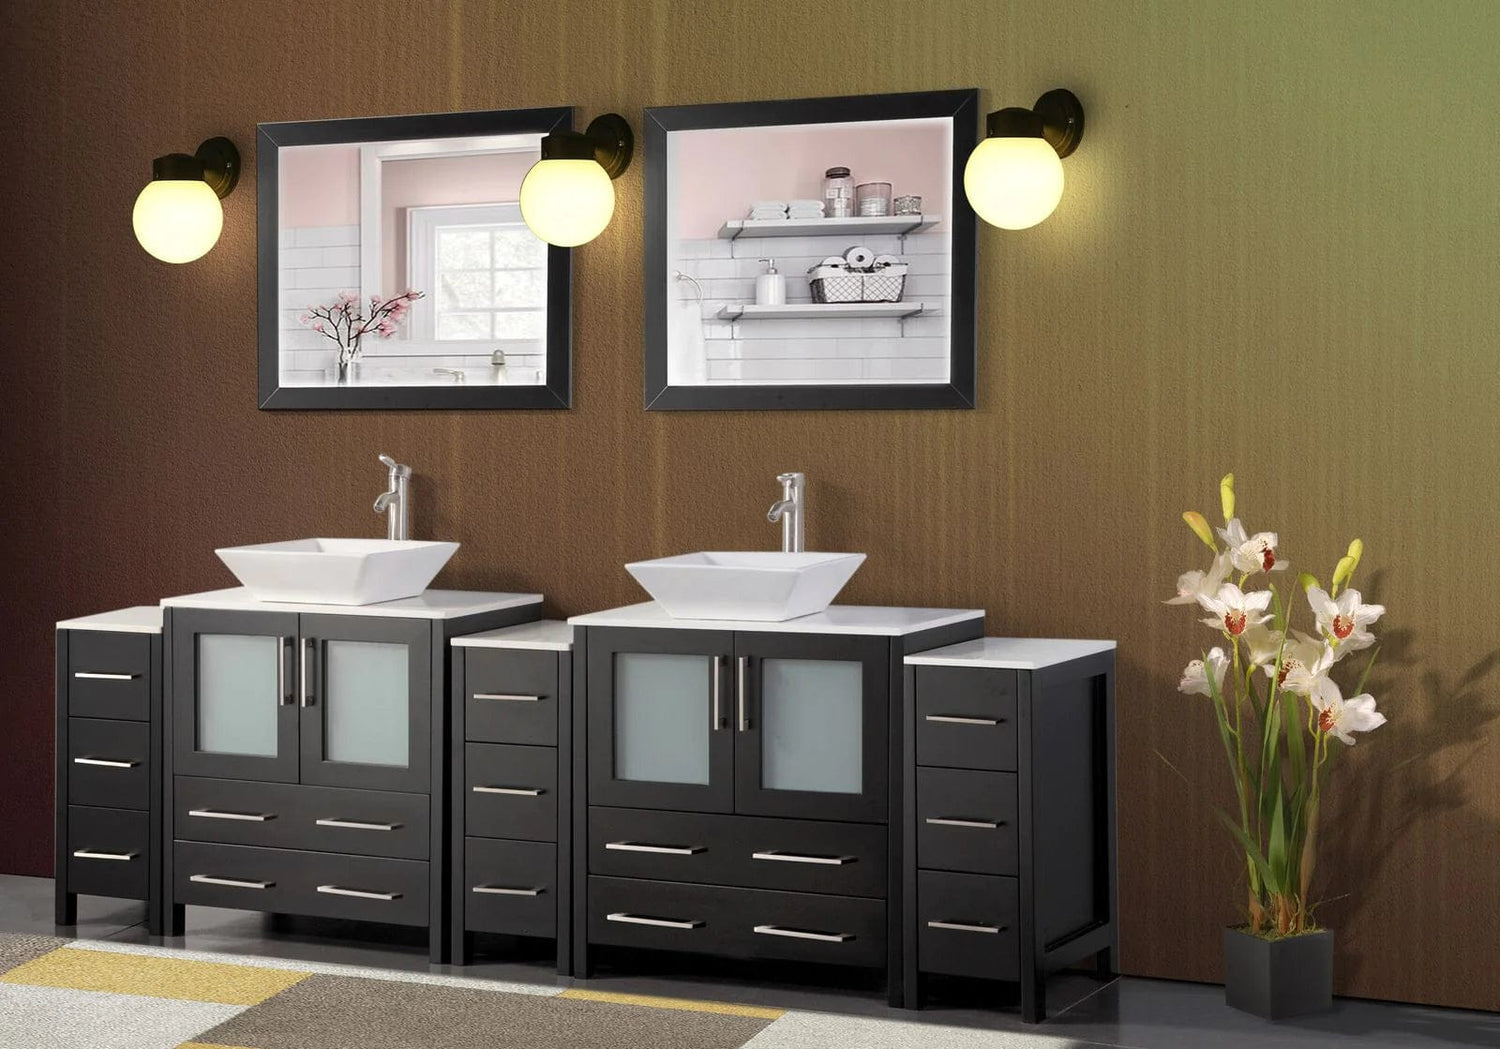 96 in. Double Sink Bathroom Vanity Combo Set in Espresso - Decohub Home